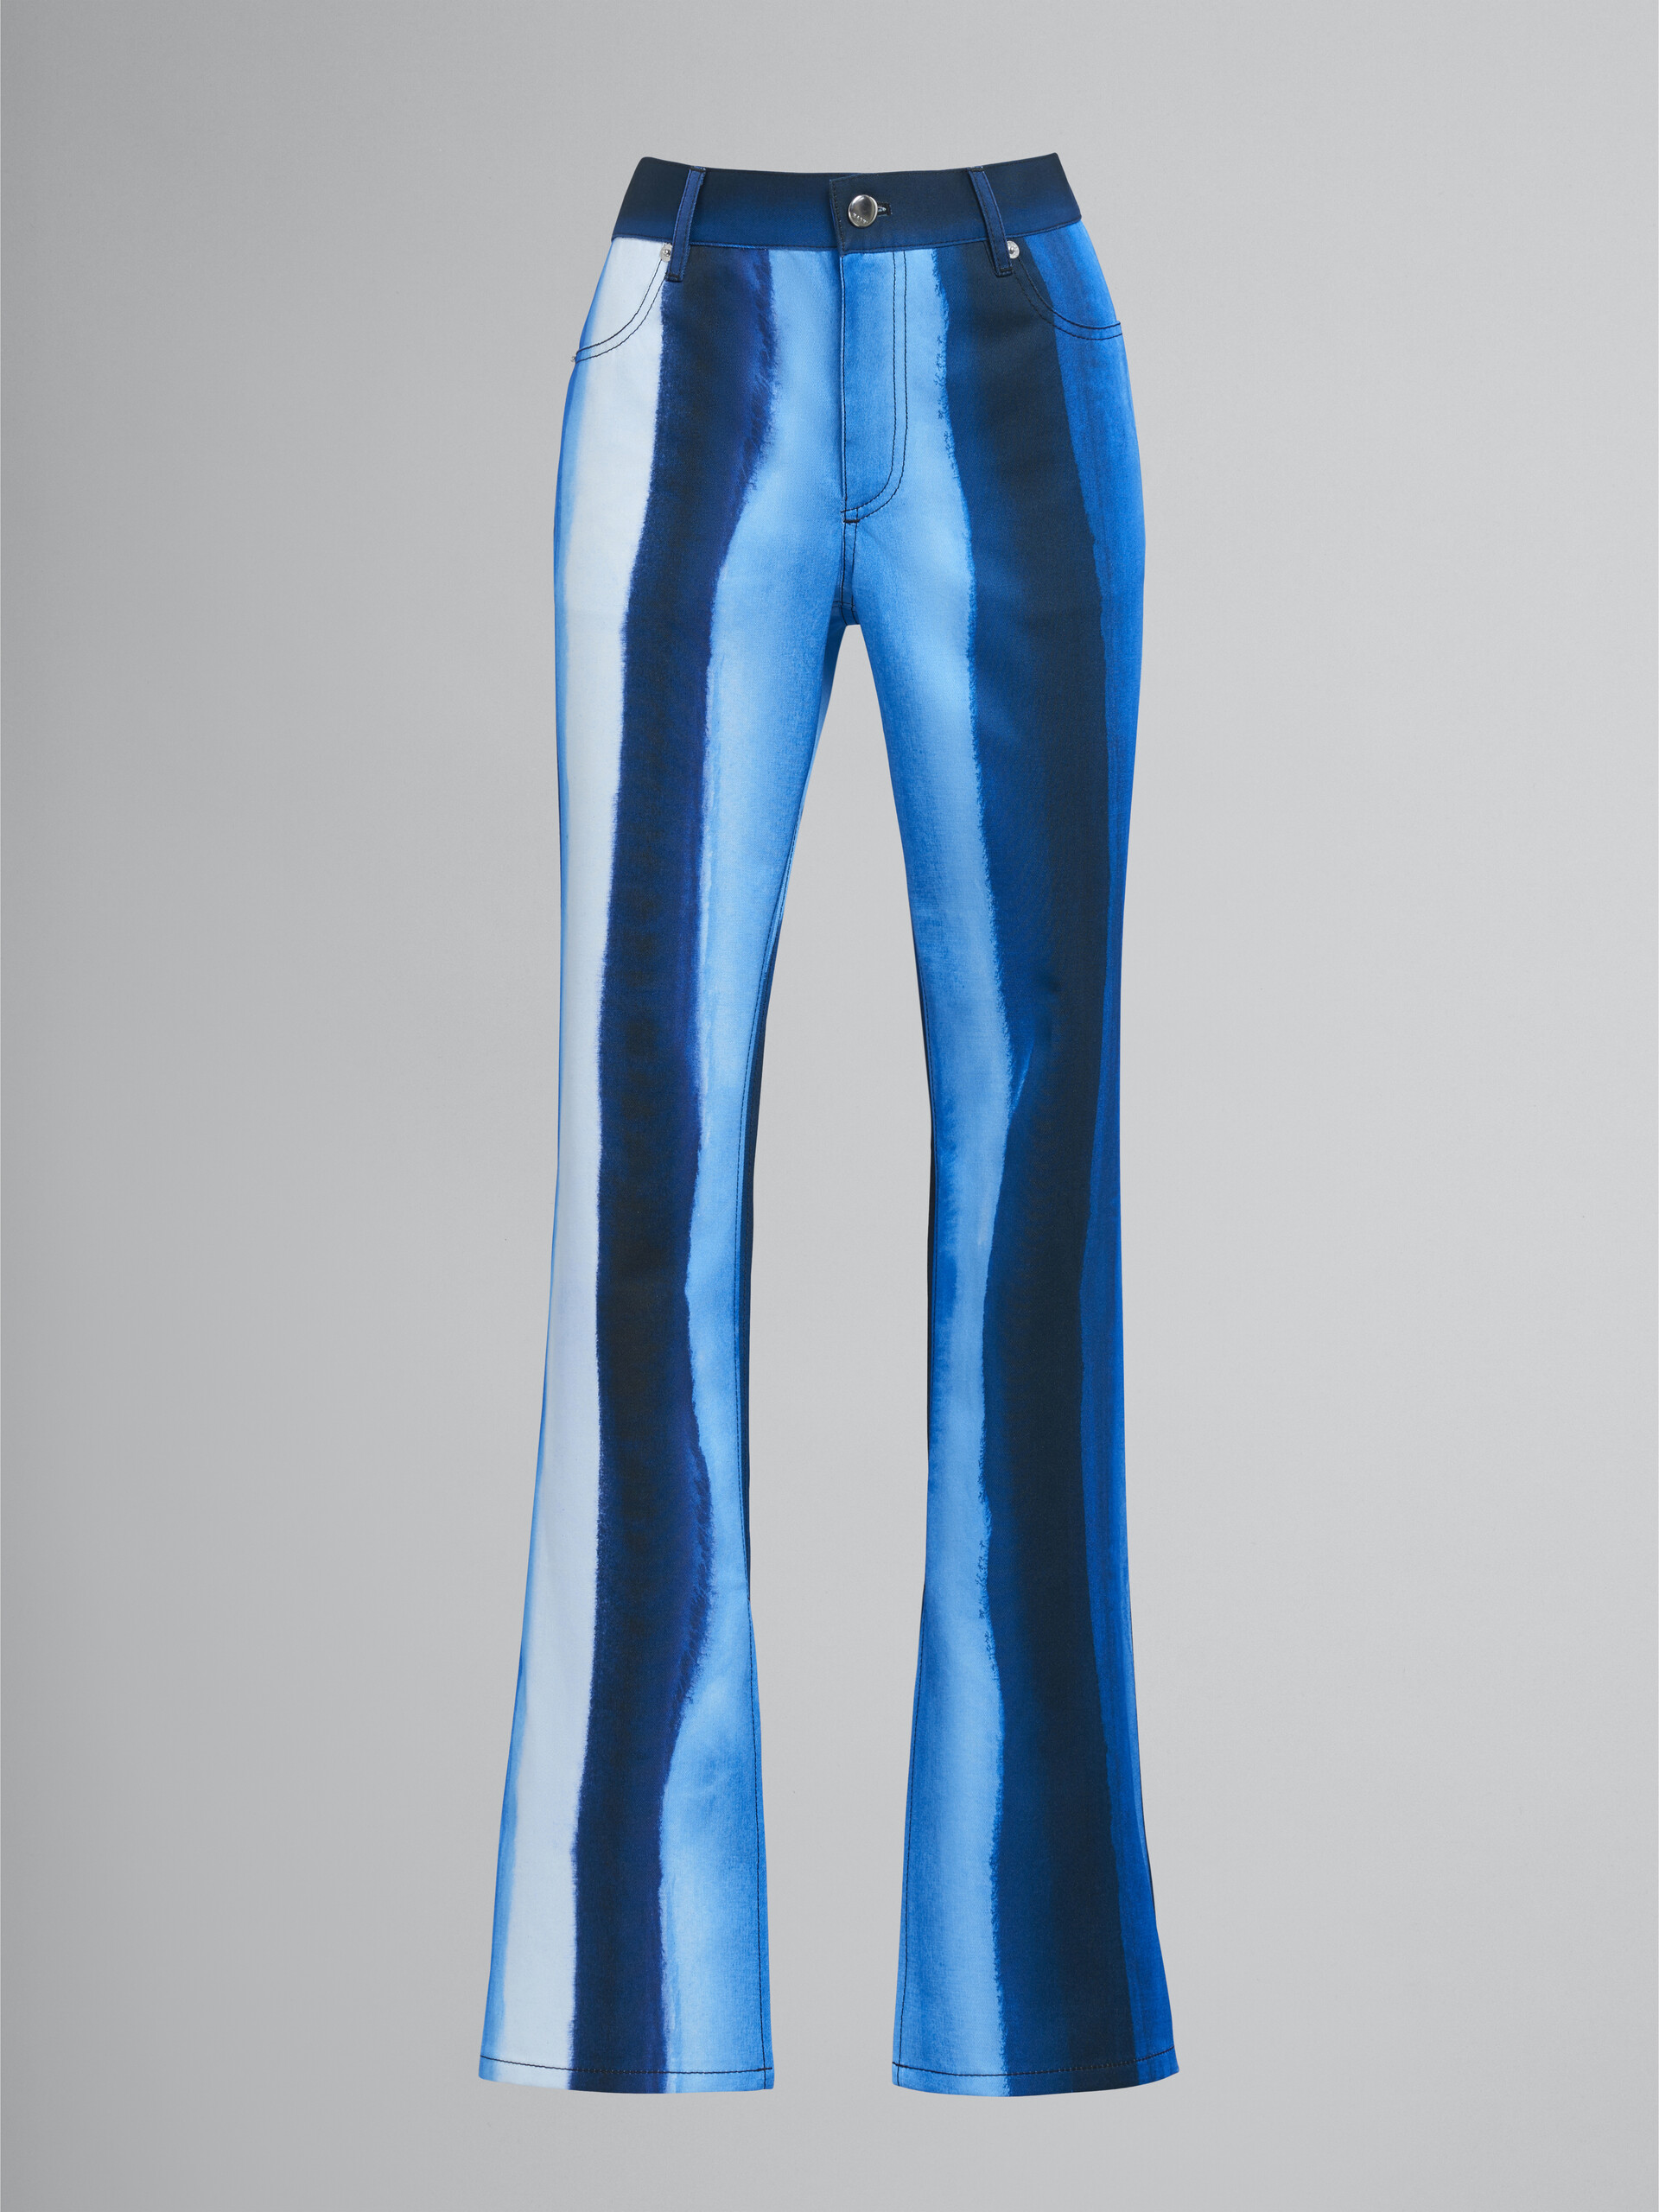 Hose aus Baumwolldrillich mit Waterfall Stripe-Print - Hosen - Image 1